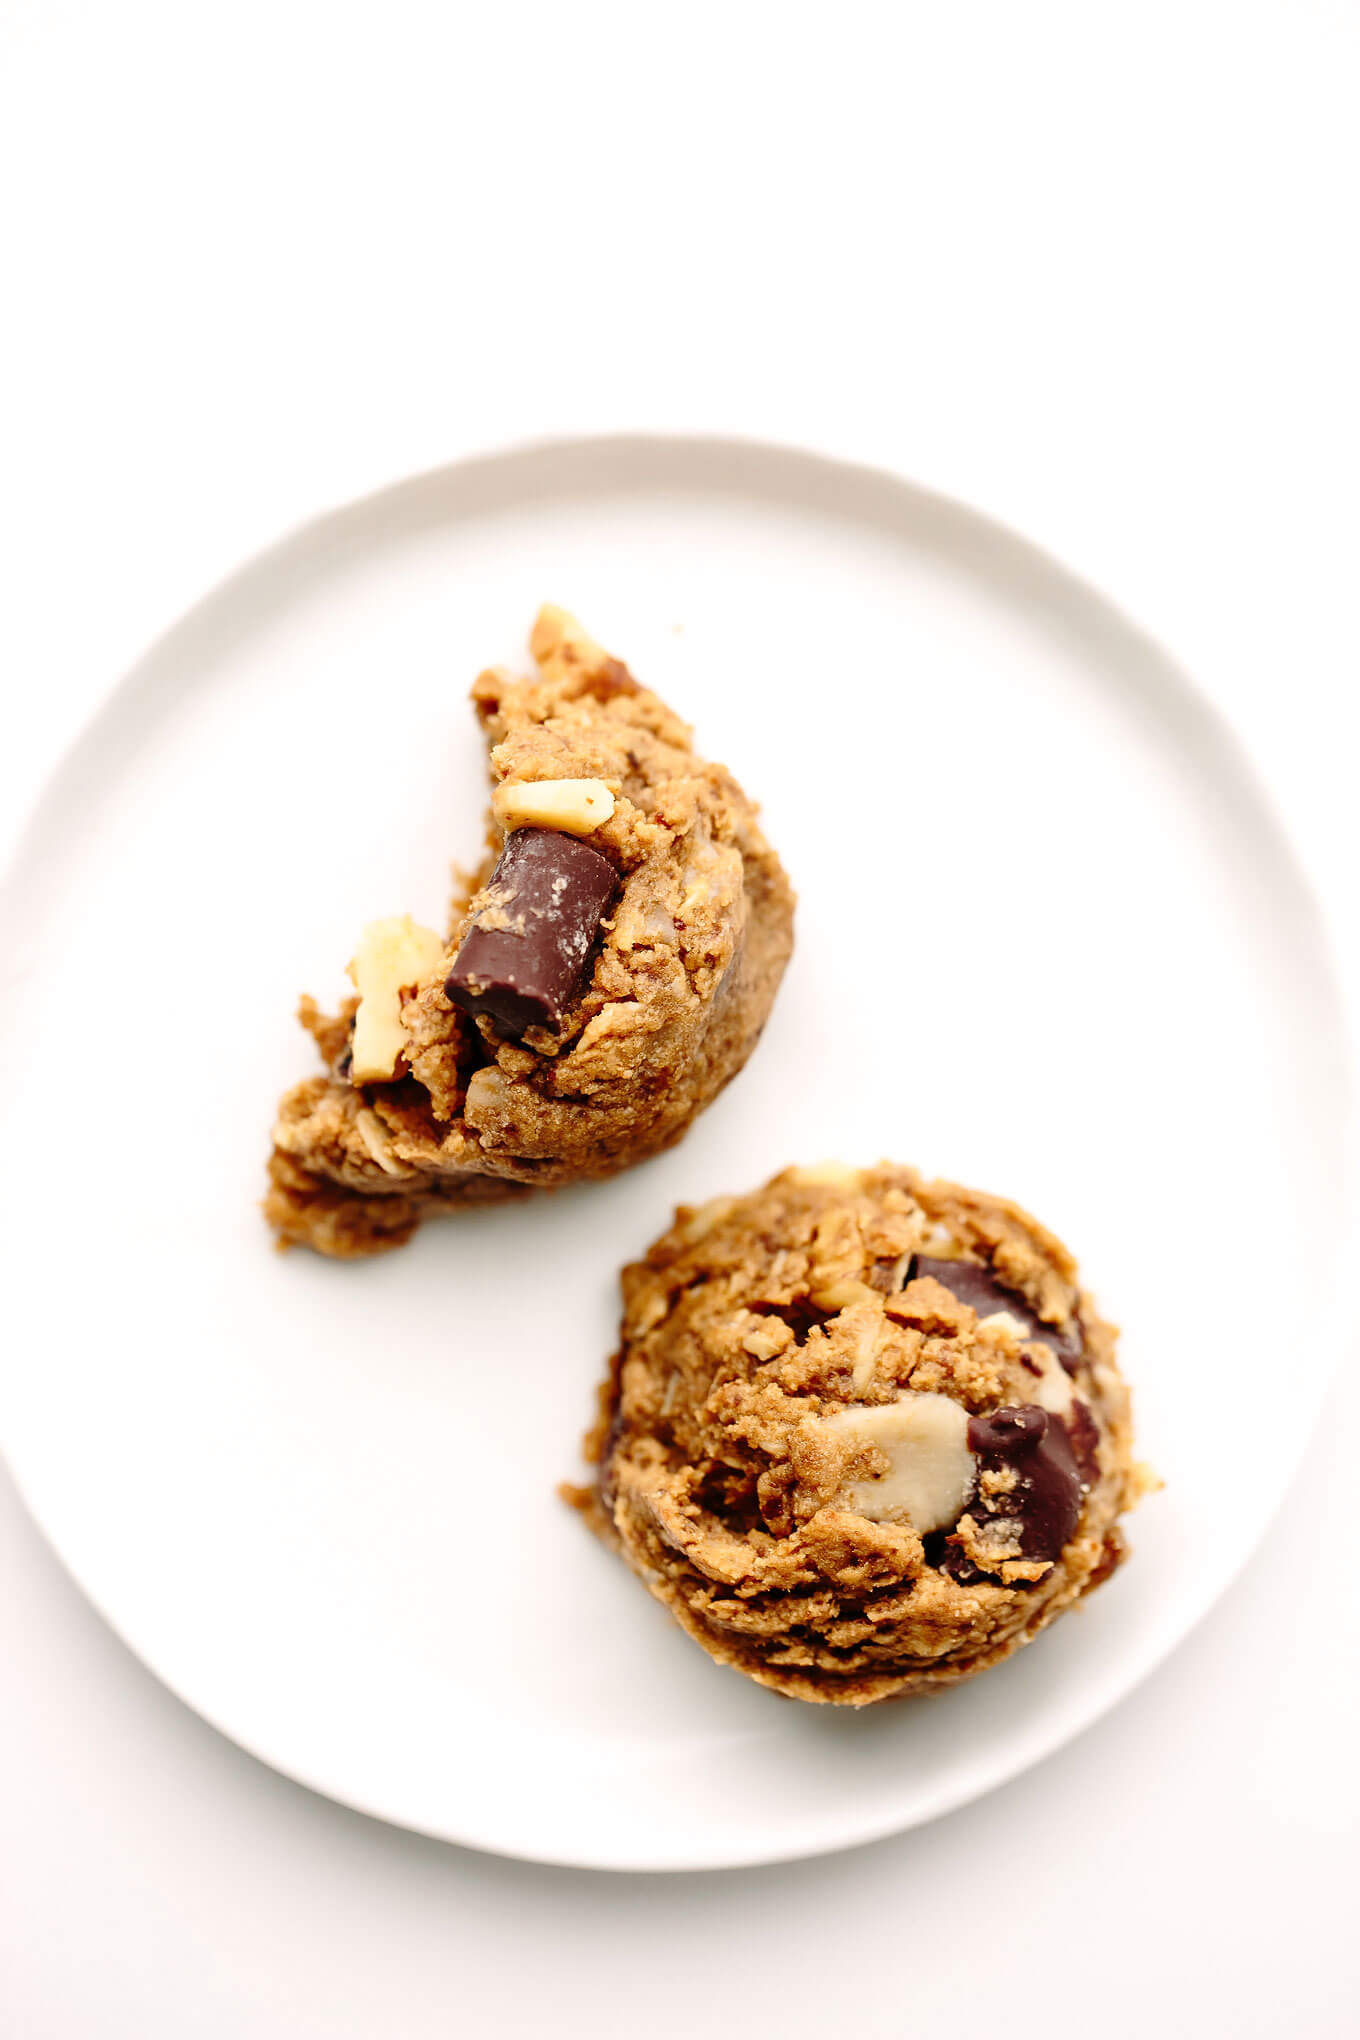 Peanut Butter Kitchen Sink Cookies | Vegan, Gluten-Free